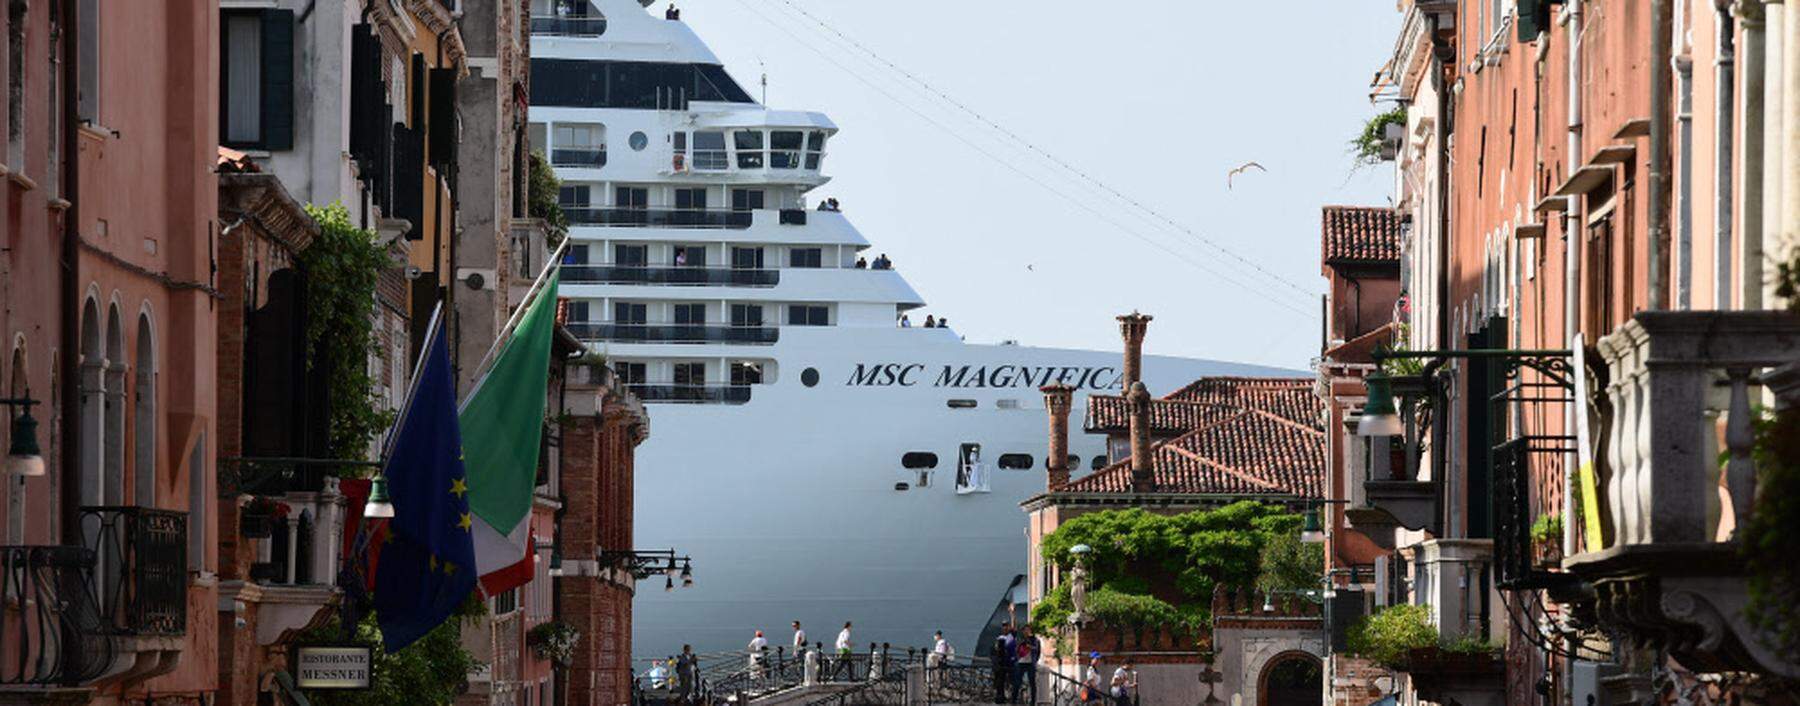 
Nicht erwünscht: Kreuzfahrtschiffe wie die hier abgebildete MS Magnifica müssen heute außerhalb am Industriehafen Venedigs anlegen.